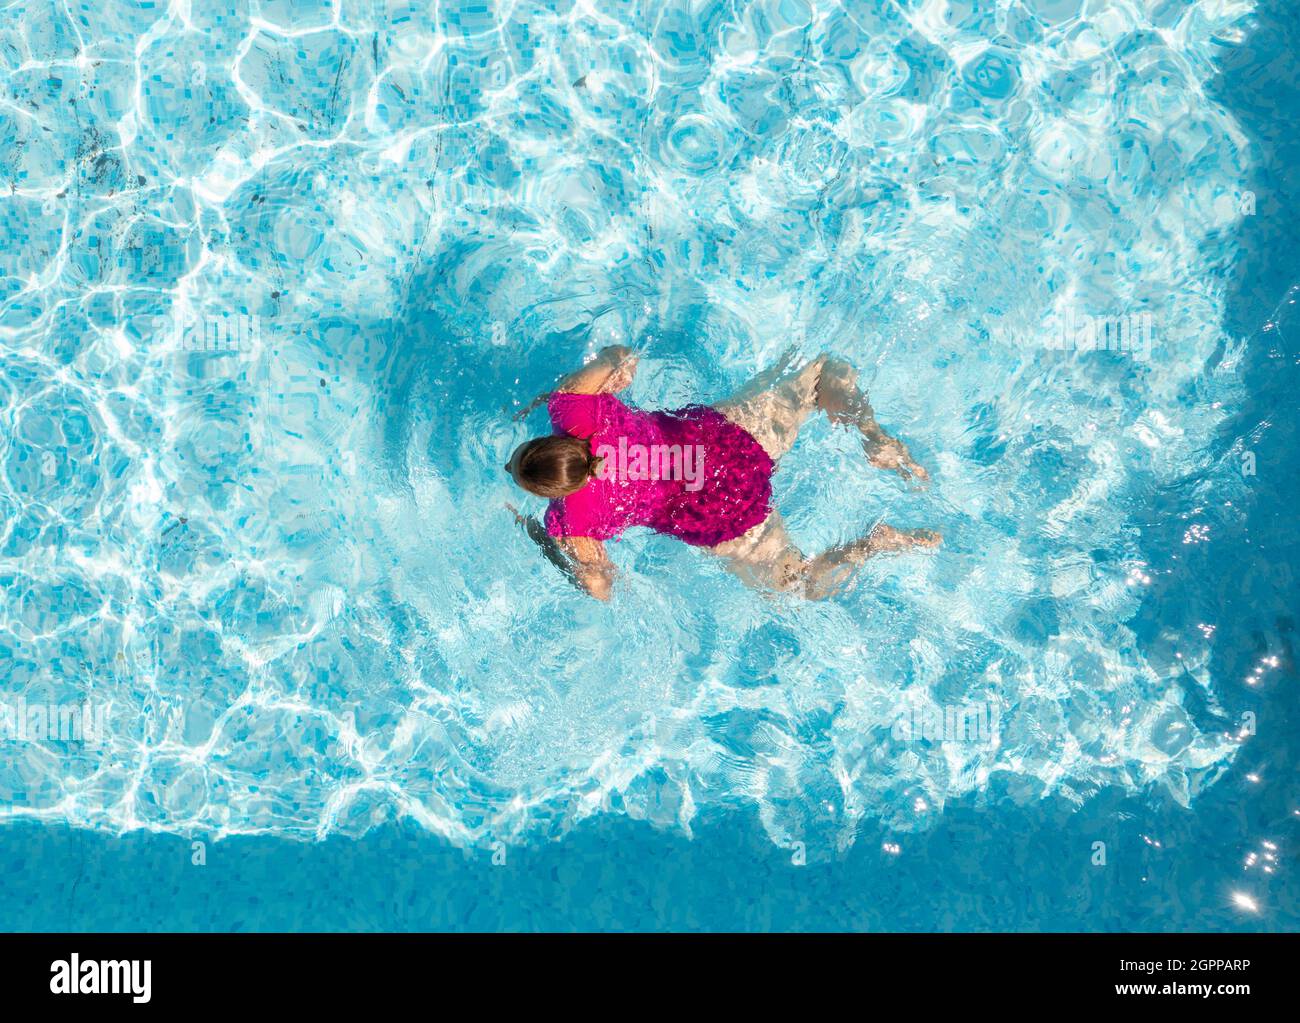 Nederland, Breda, Blick von oben auf die Frau im Schwimmbad Stockfoto